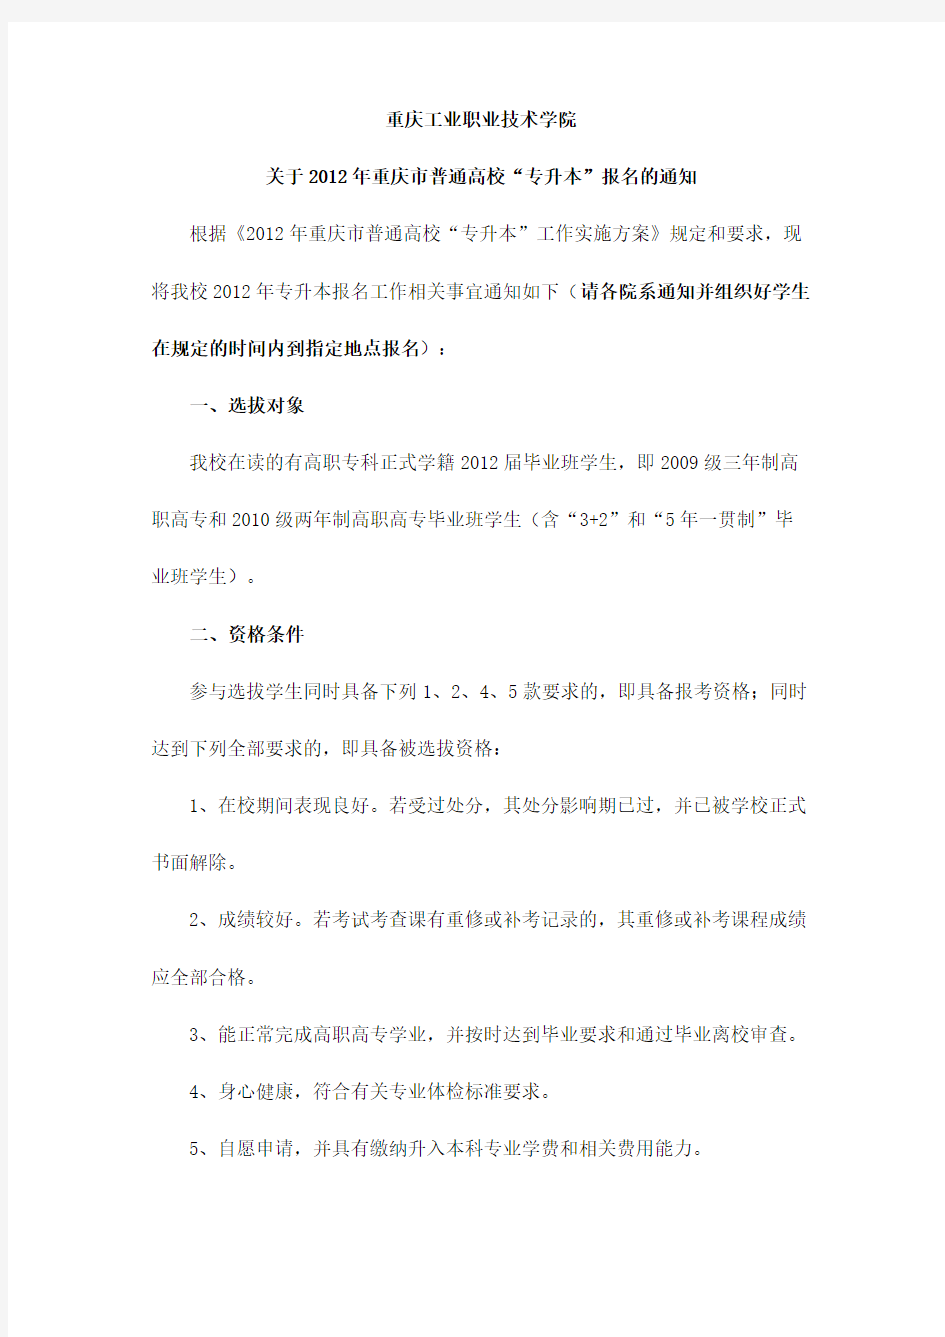 2012年重庆市普通高校“专升本”报名的通知